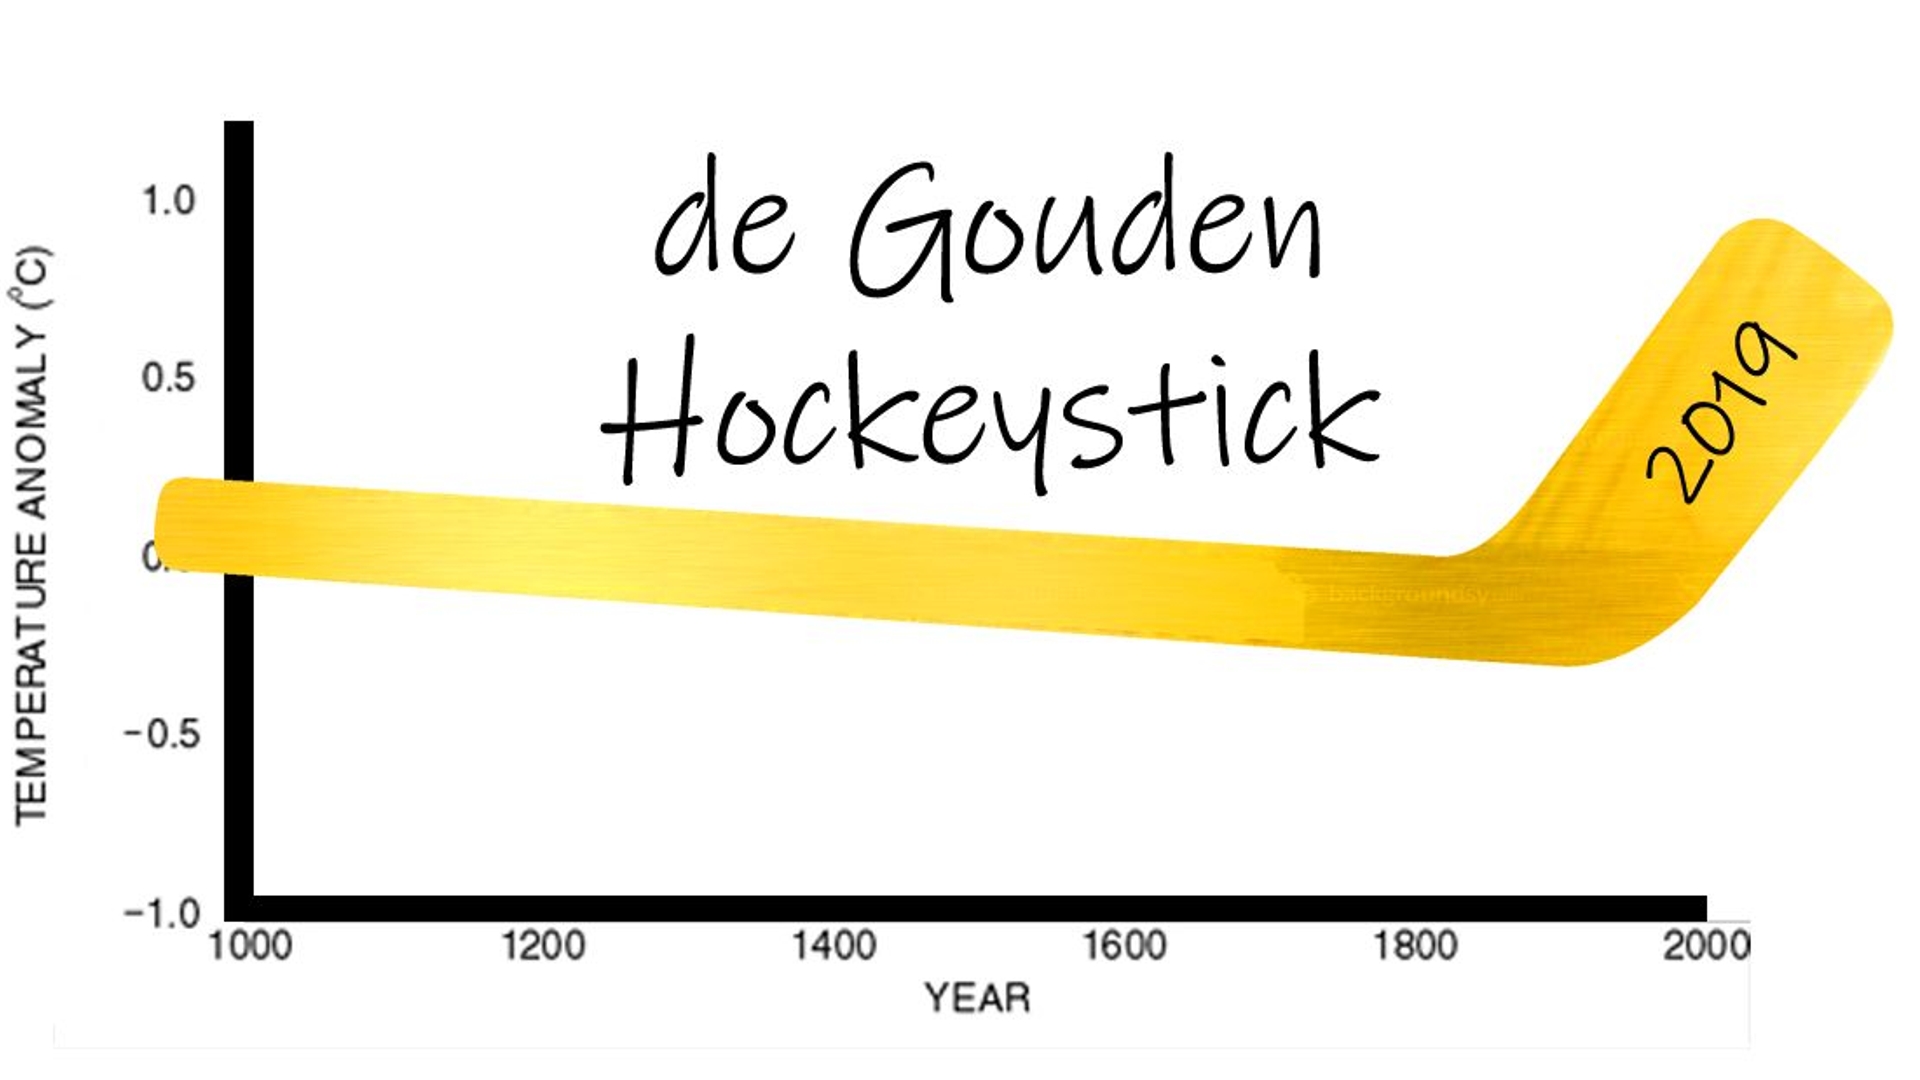 goudenhockeystick